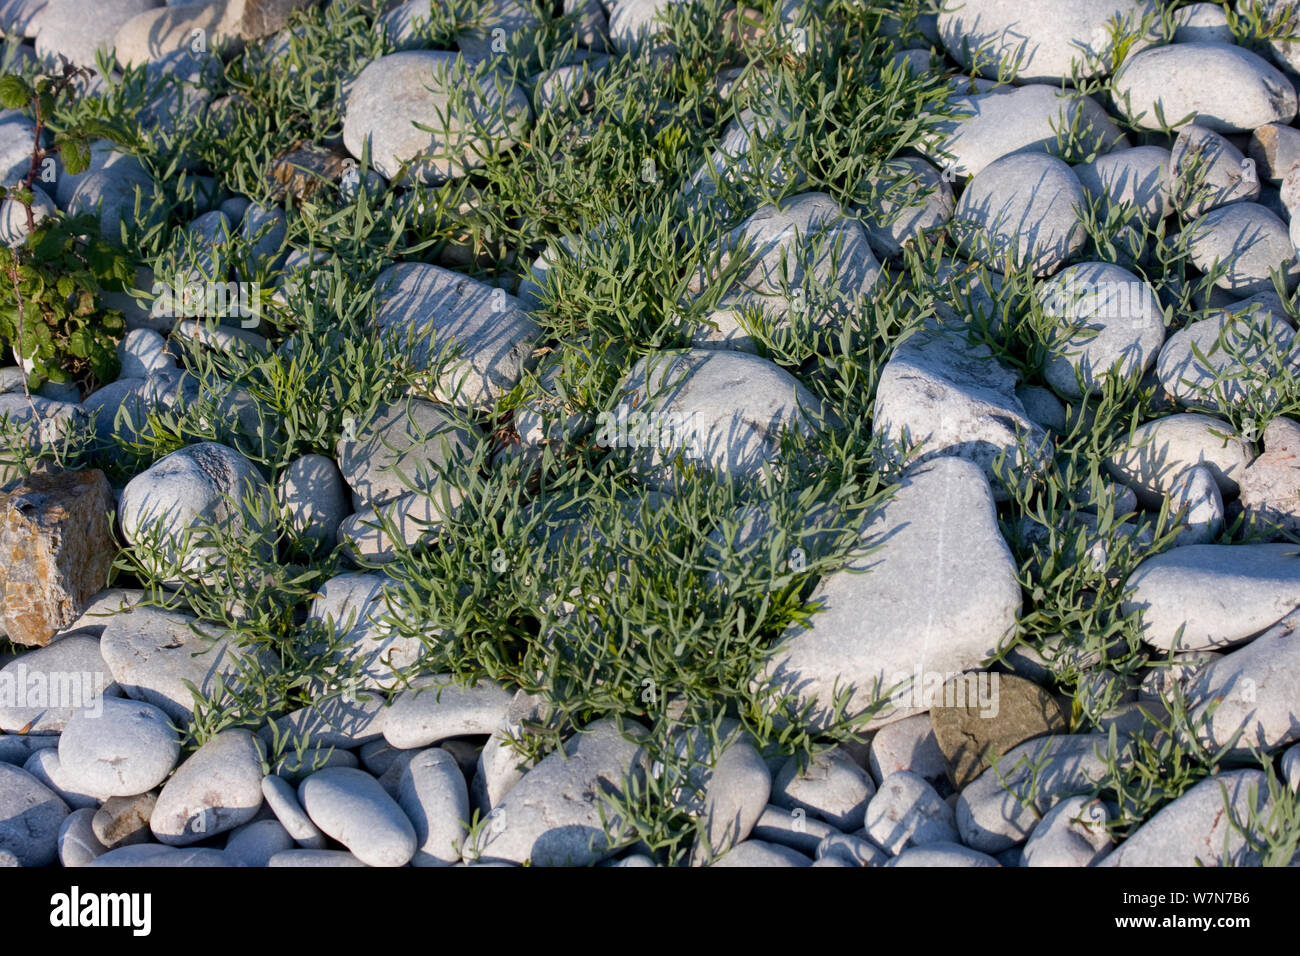 Arroches (Atriplex sp) croissant entre les cailloux sur une plage de galets, tempête Pwll Du Gower, Pays de Galles, Royaume-Uni, juin Banque D'Images